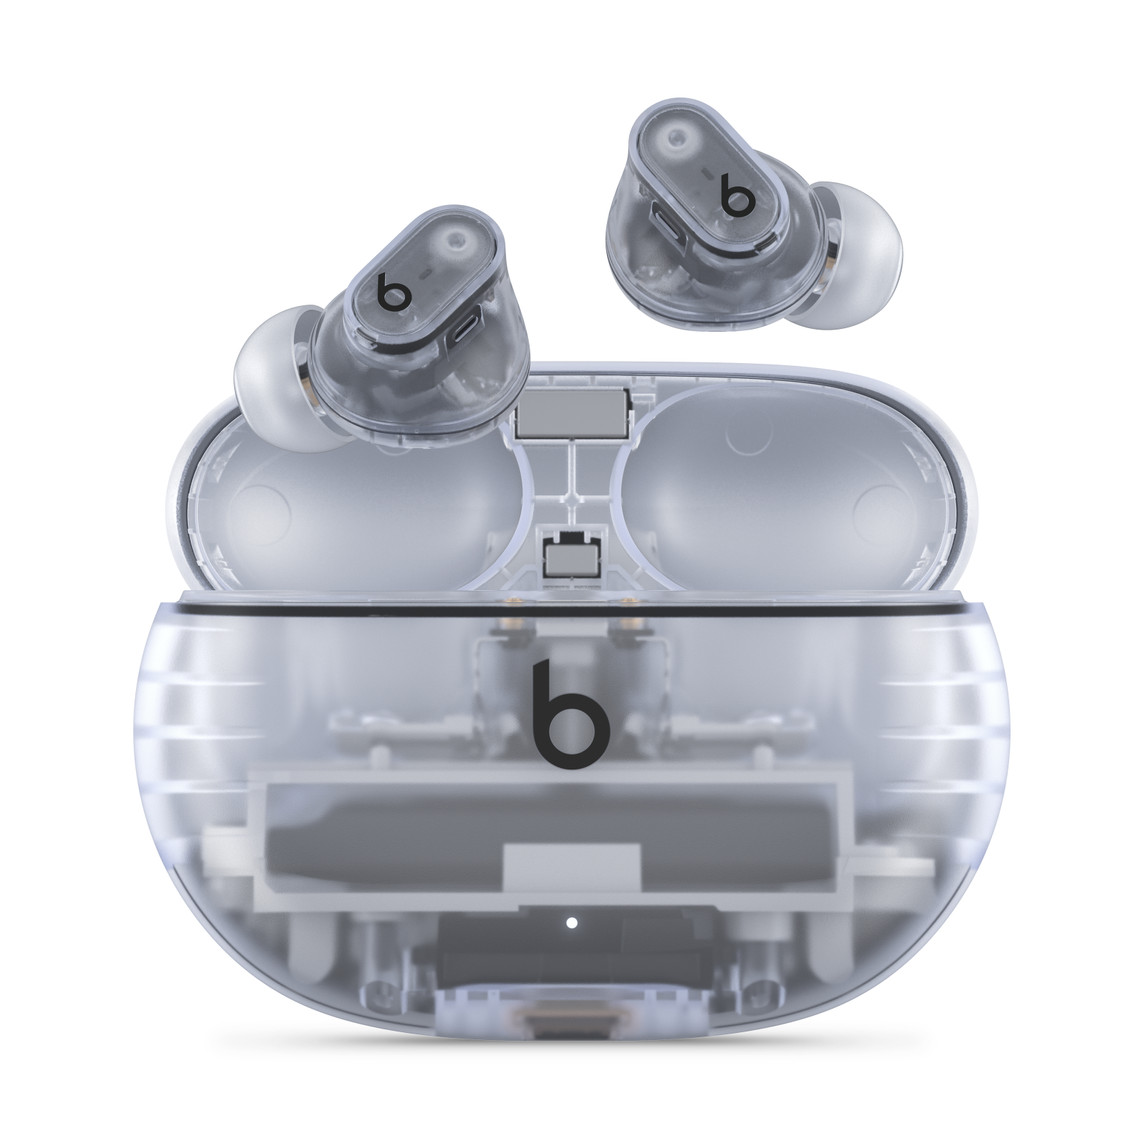 Écouteurs Beats Studio Buds + totalement sans fil avec réduction du bruit, en coloris Transparent avec le logo Beats, présentés au-dessus du boîtier de charge pratique.